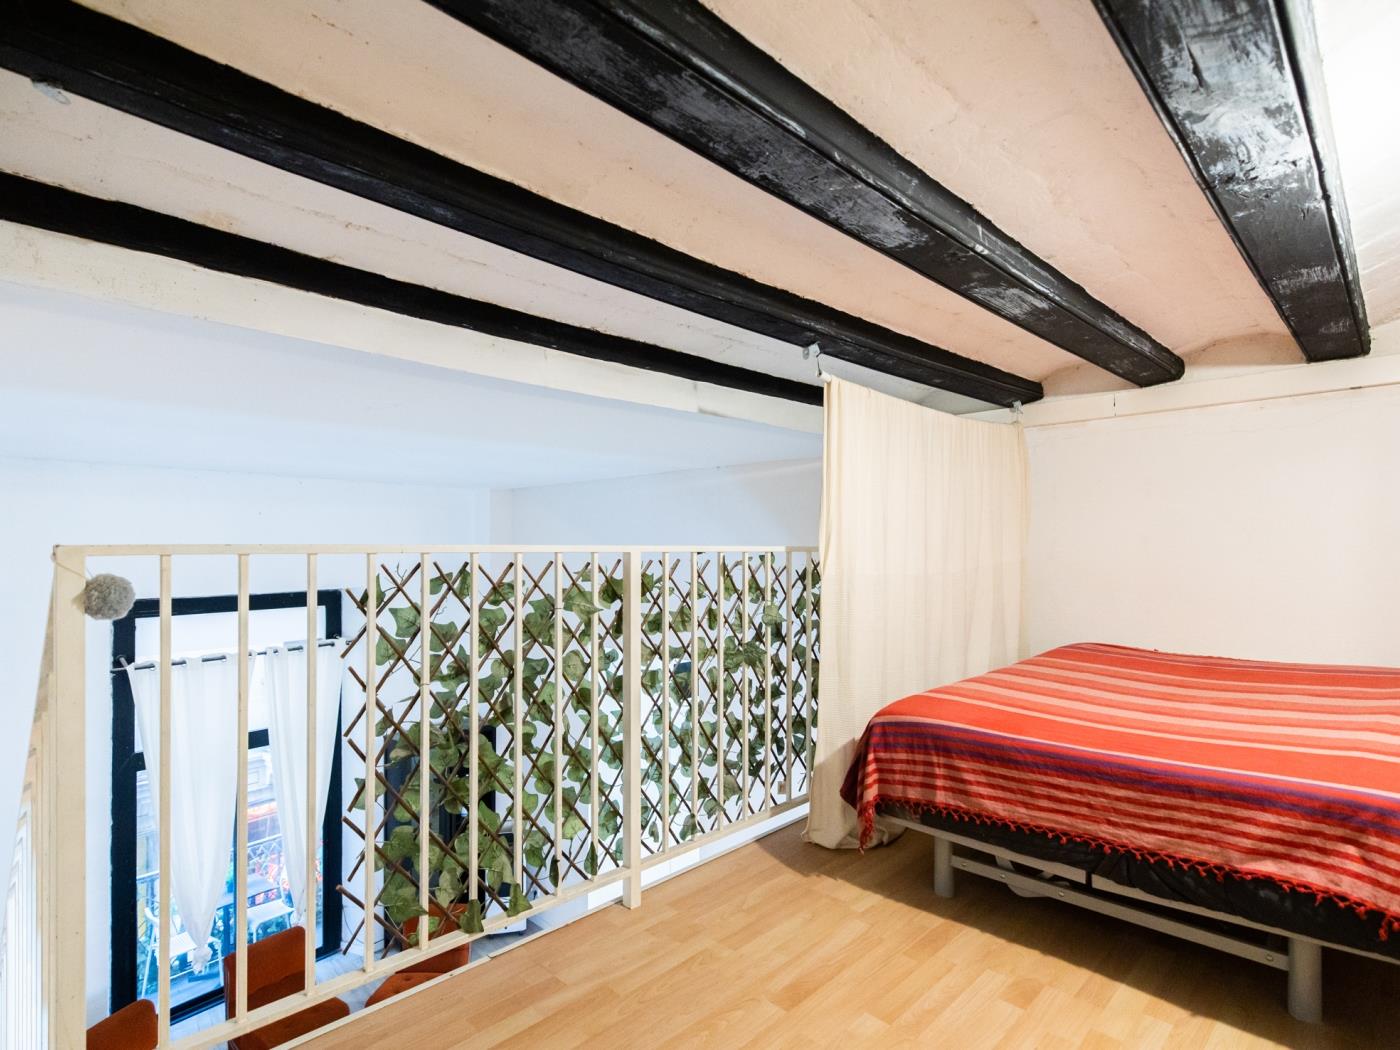 Apartamento de habitaciones dobles para estudiantes cerca de la Pompeu Fabra - My Space Barcelona Apartamentos